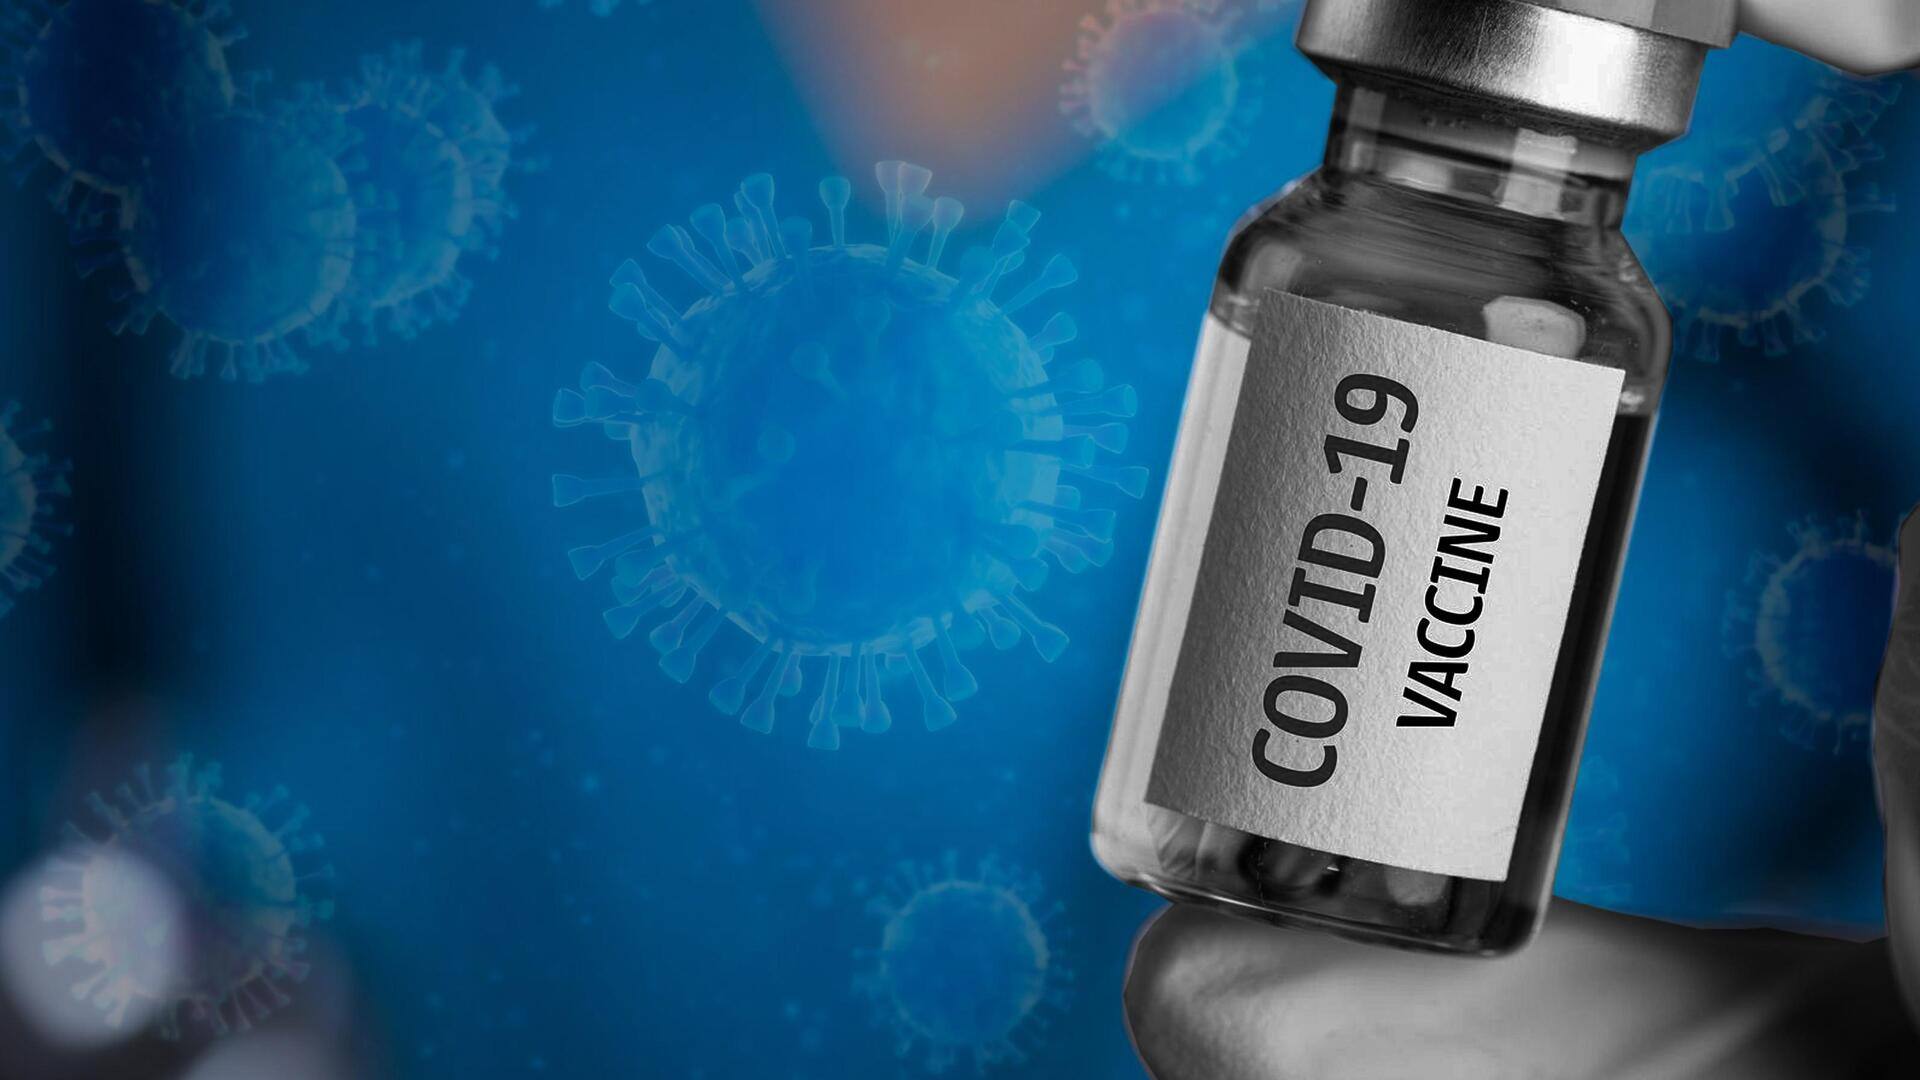 केंद्र सरकार अब नहीं खरीदेगी कोरोना वायरस वैक्सीन, जानिए क्यों लिया गया फैसला